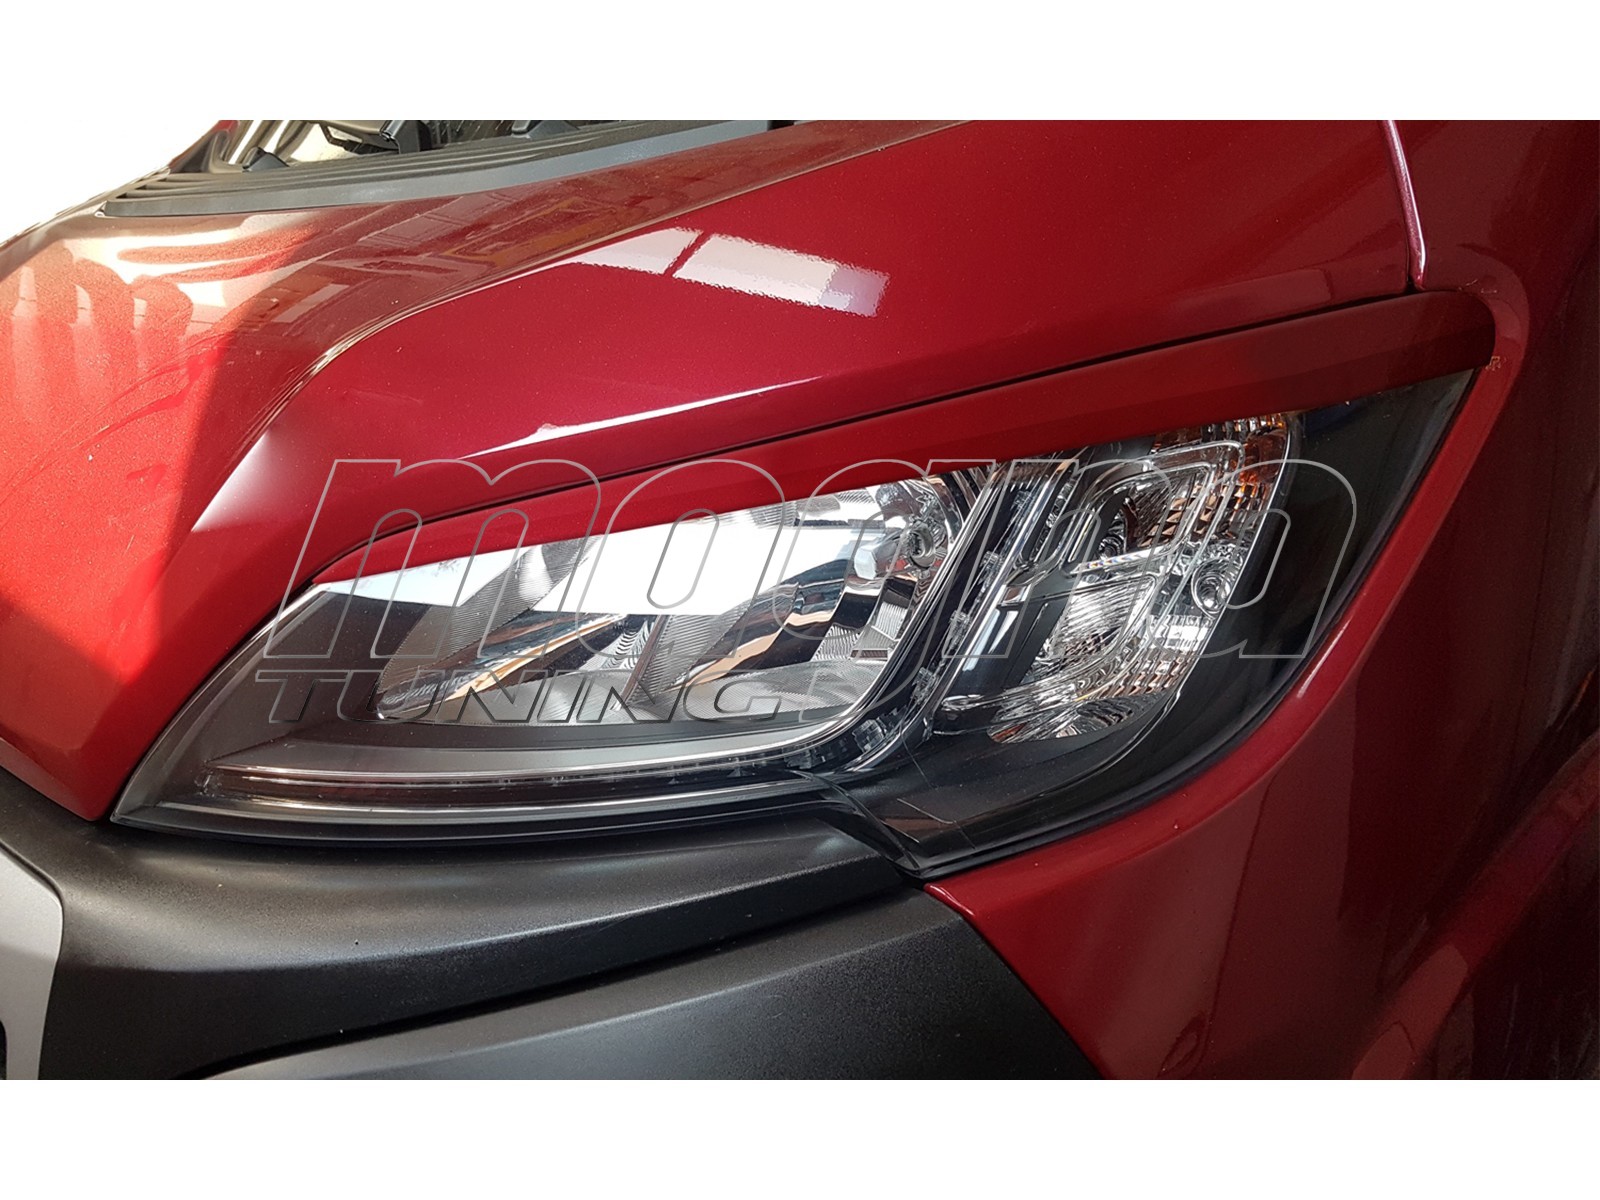 Peugeot Boxer MK3 Facelift VX Headlight Spoilers